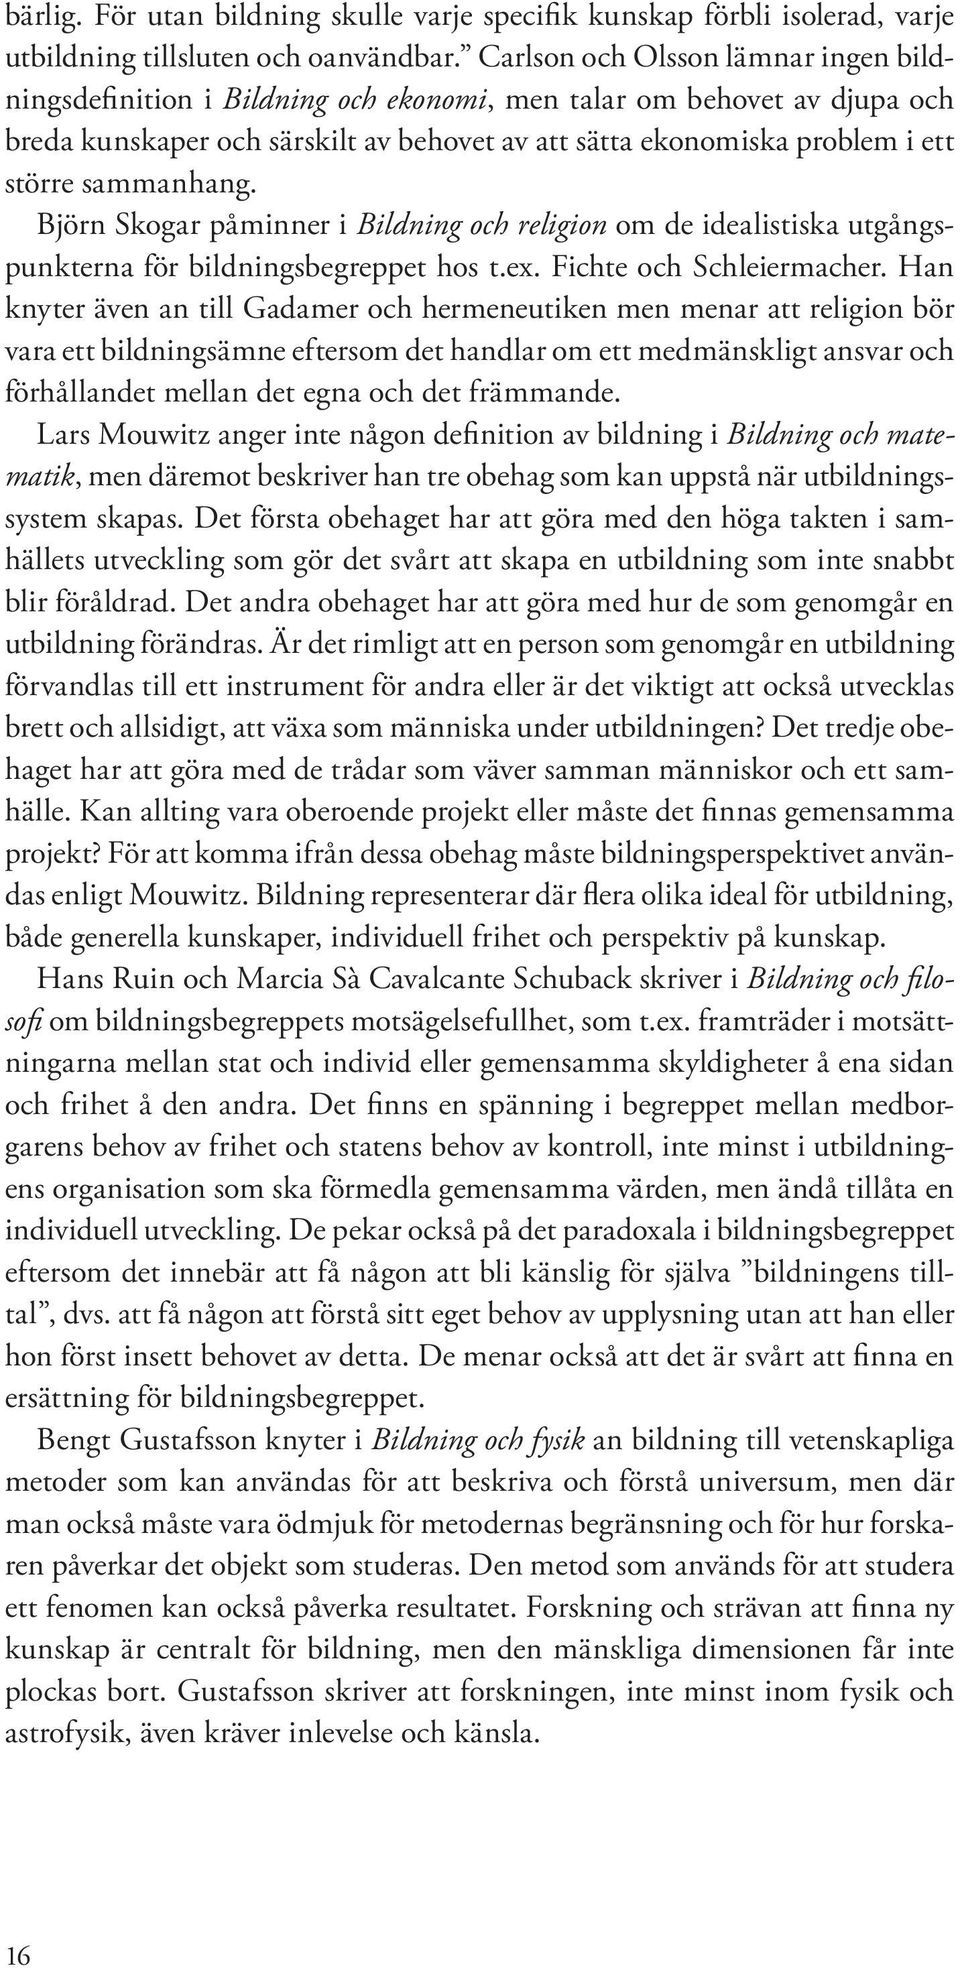 sammanhang. Björn Skogar påminner i Bildning och religion om de idealistiska utgångspunkterna för bildningsbegreppet hos t.ex. Fichte och Schleiermacher.